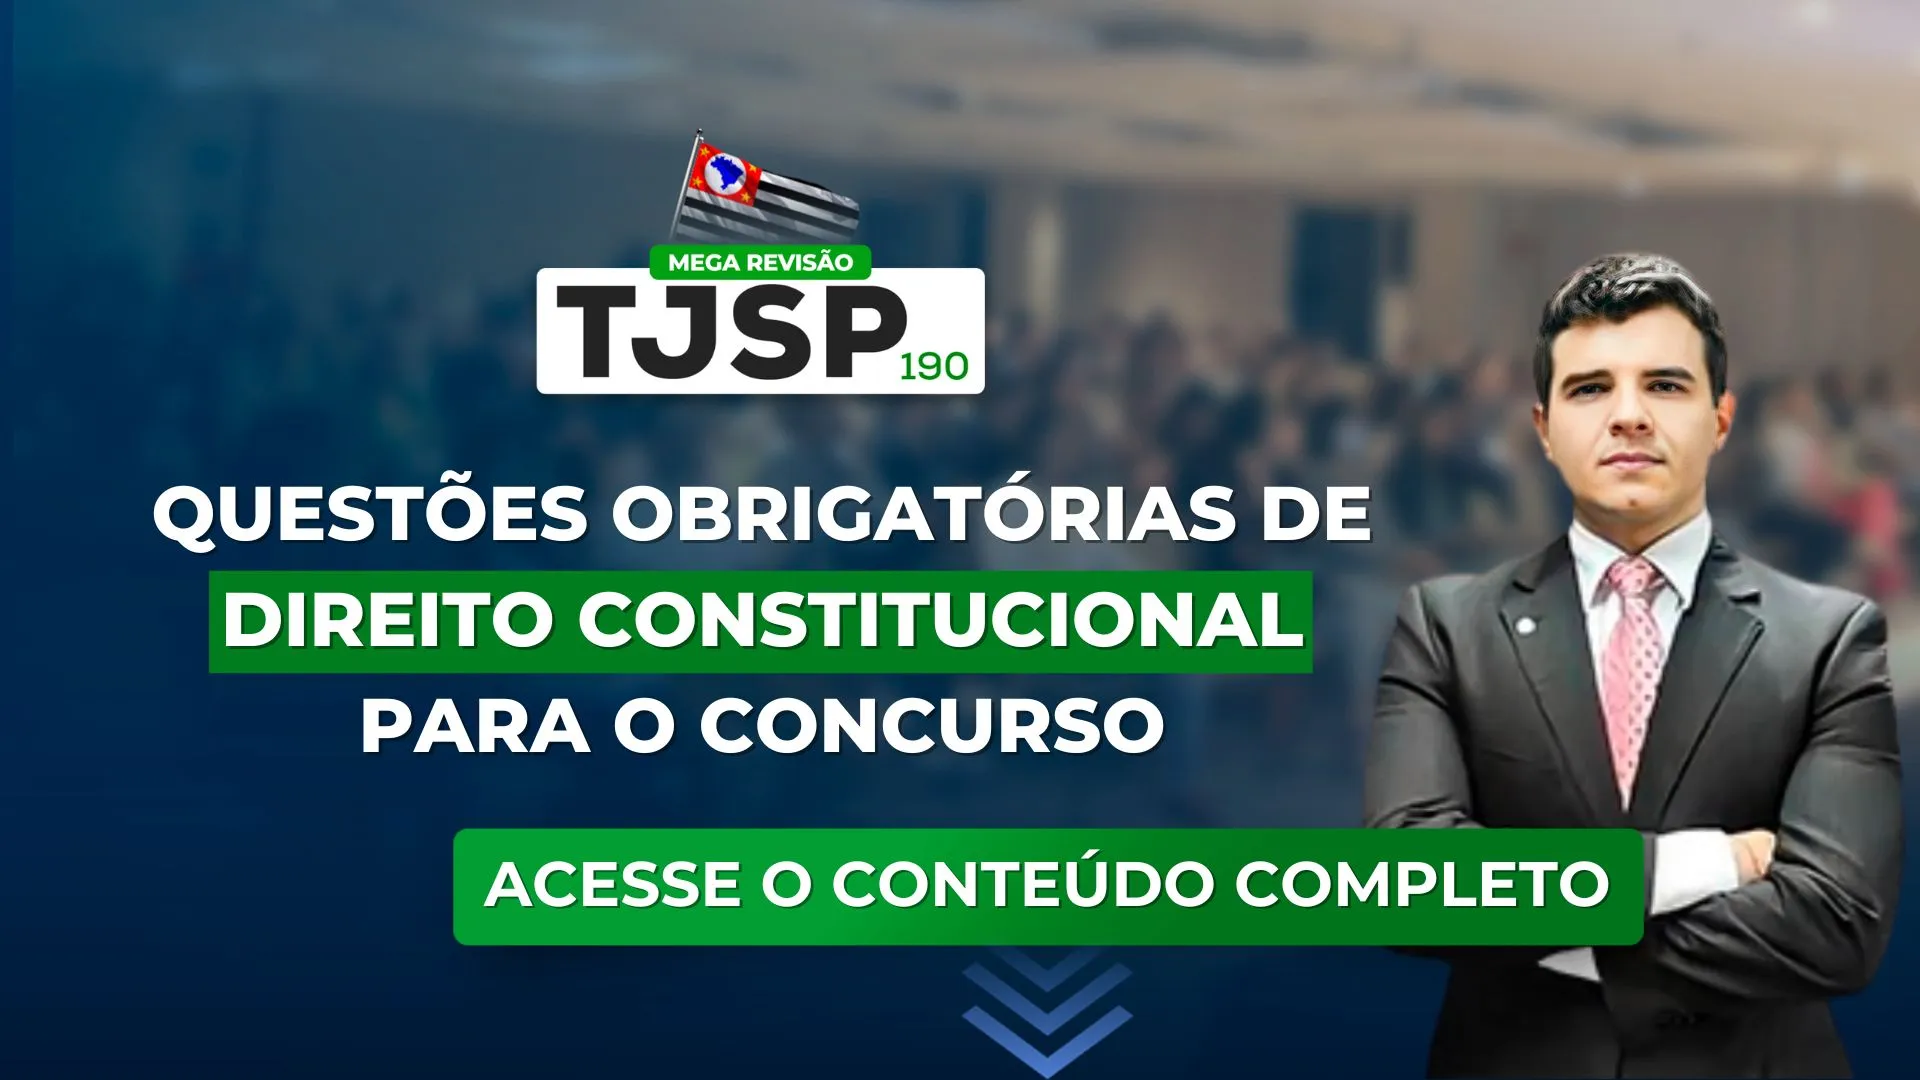 TJSP 190: Questões obrigatórias de Direito Constitucional para o concurso